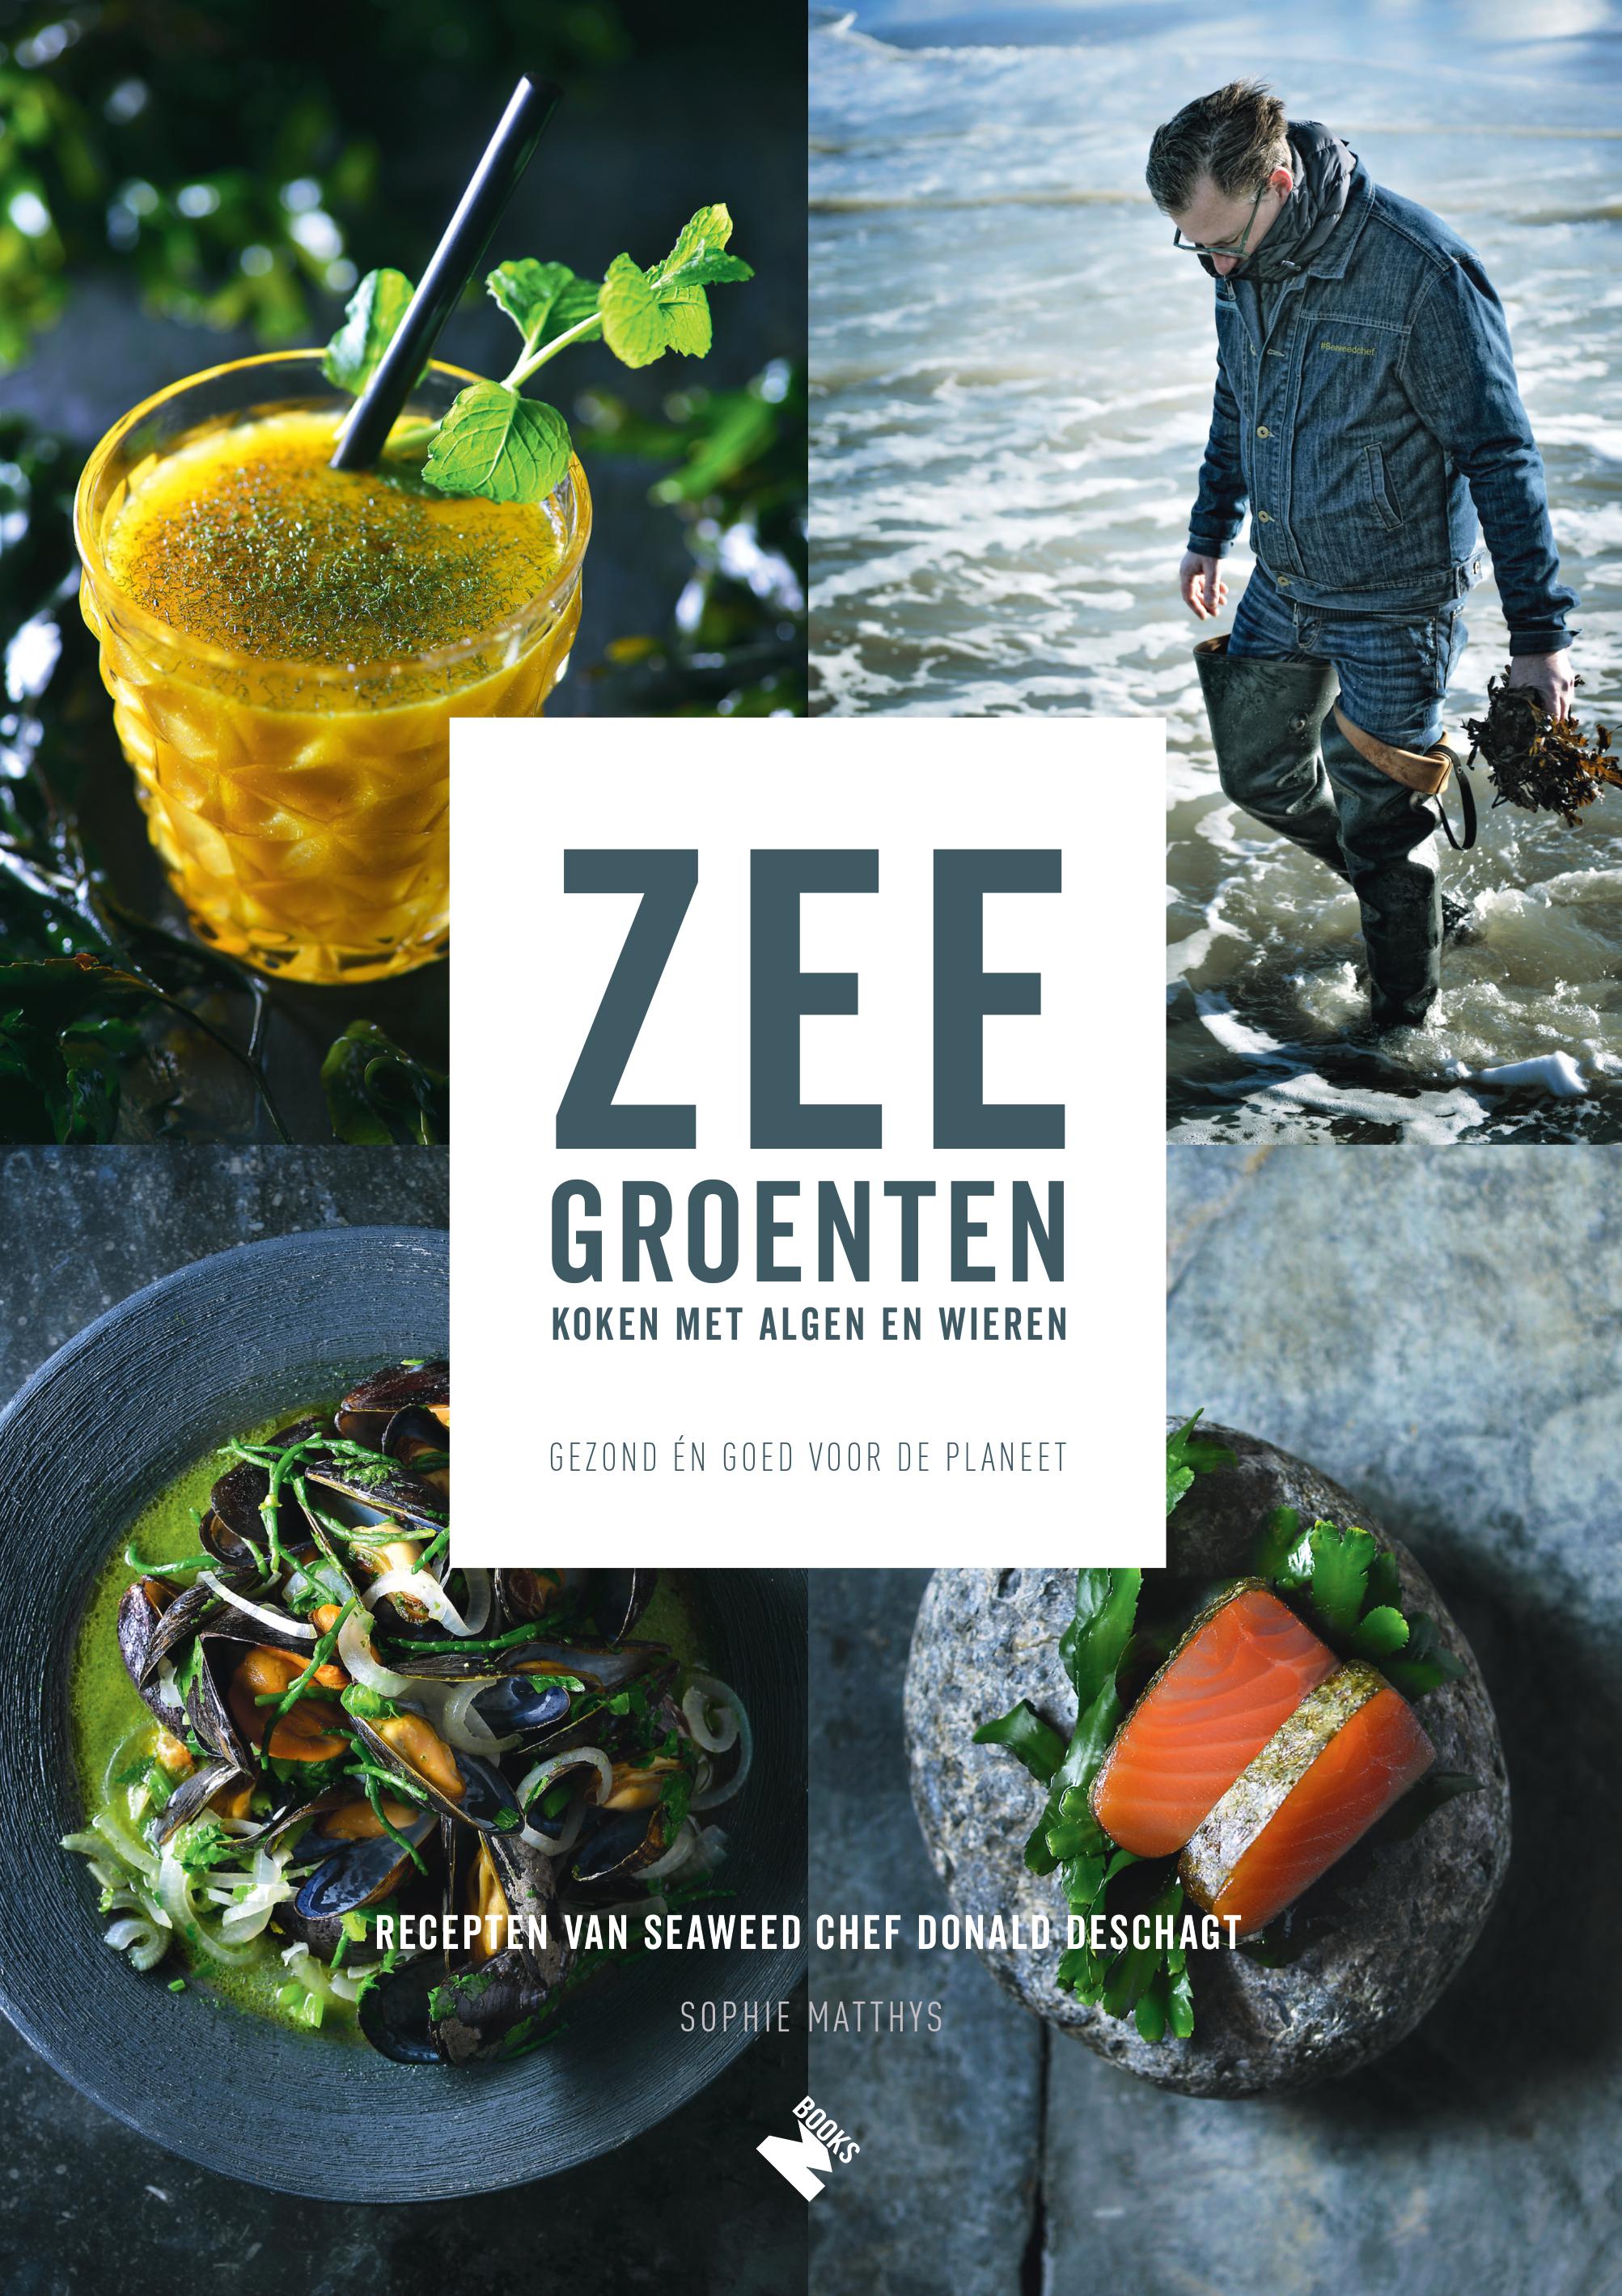 Zeegroenten (Sea vegetables)